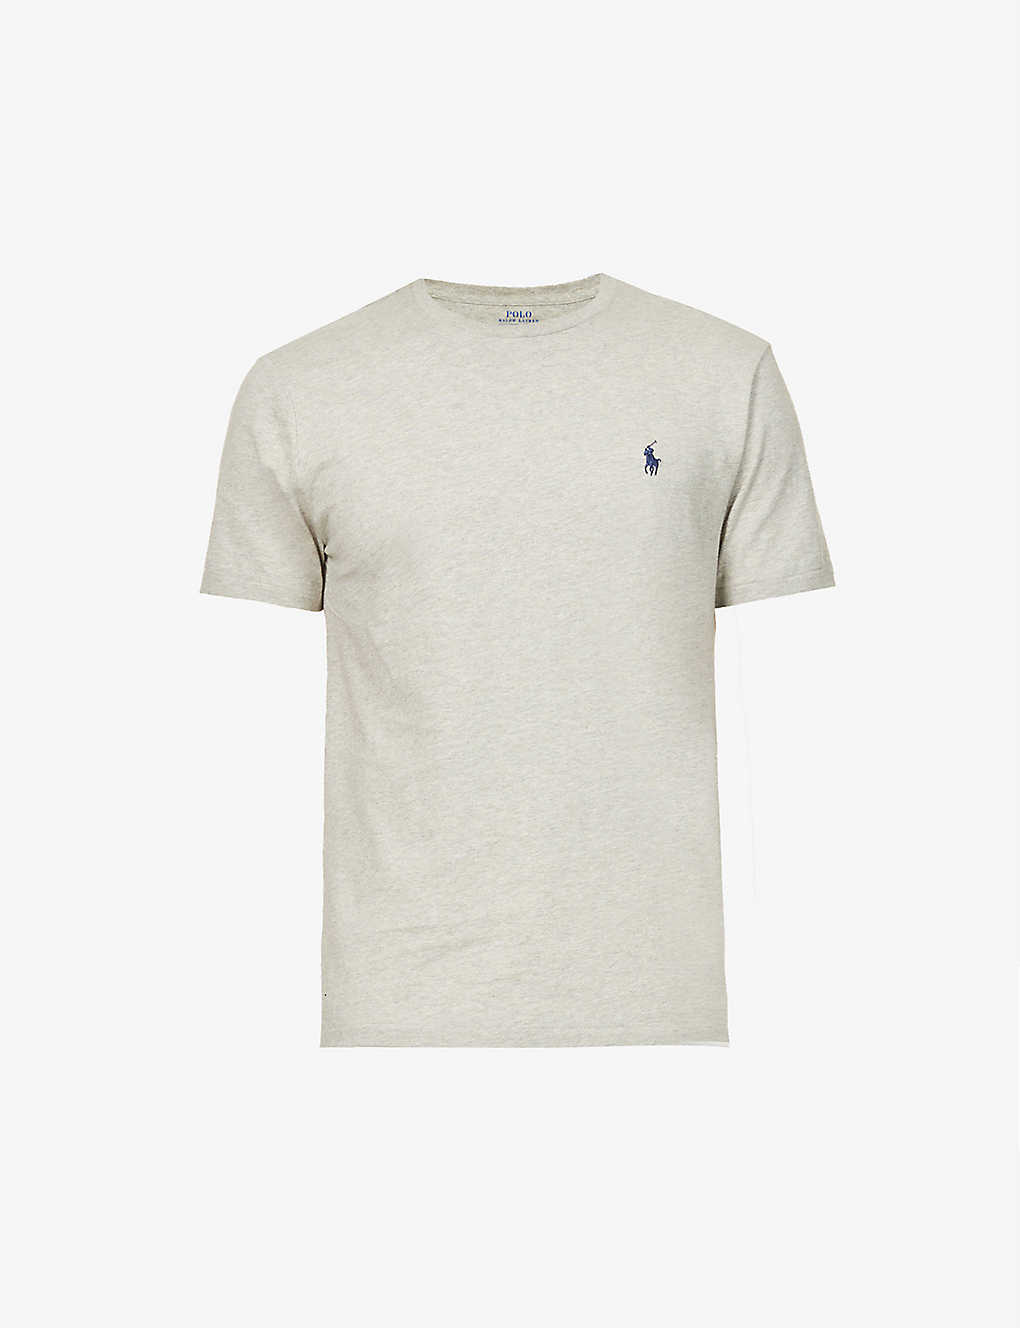 Polo Ralph Lauren Mens New Grey Heather Regular-fit Crewneck Cotton-jersey T-shirt